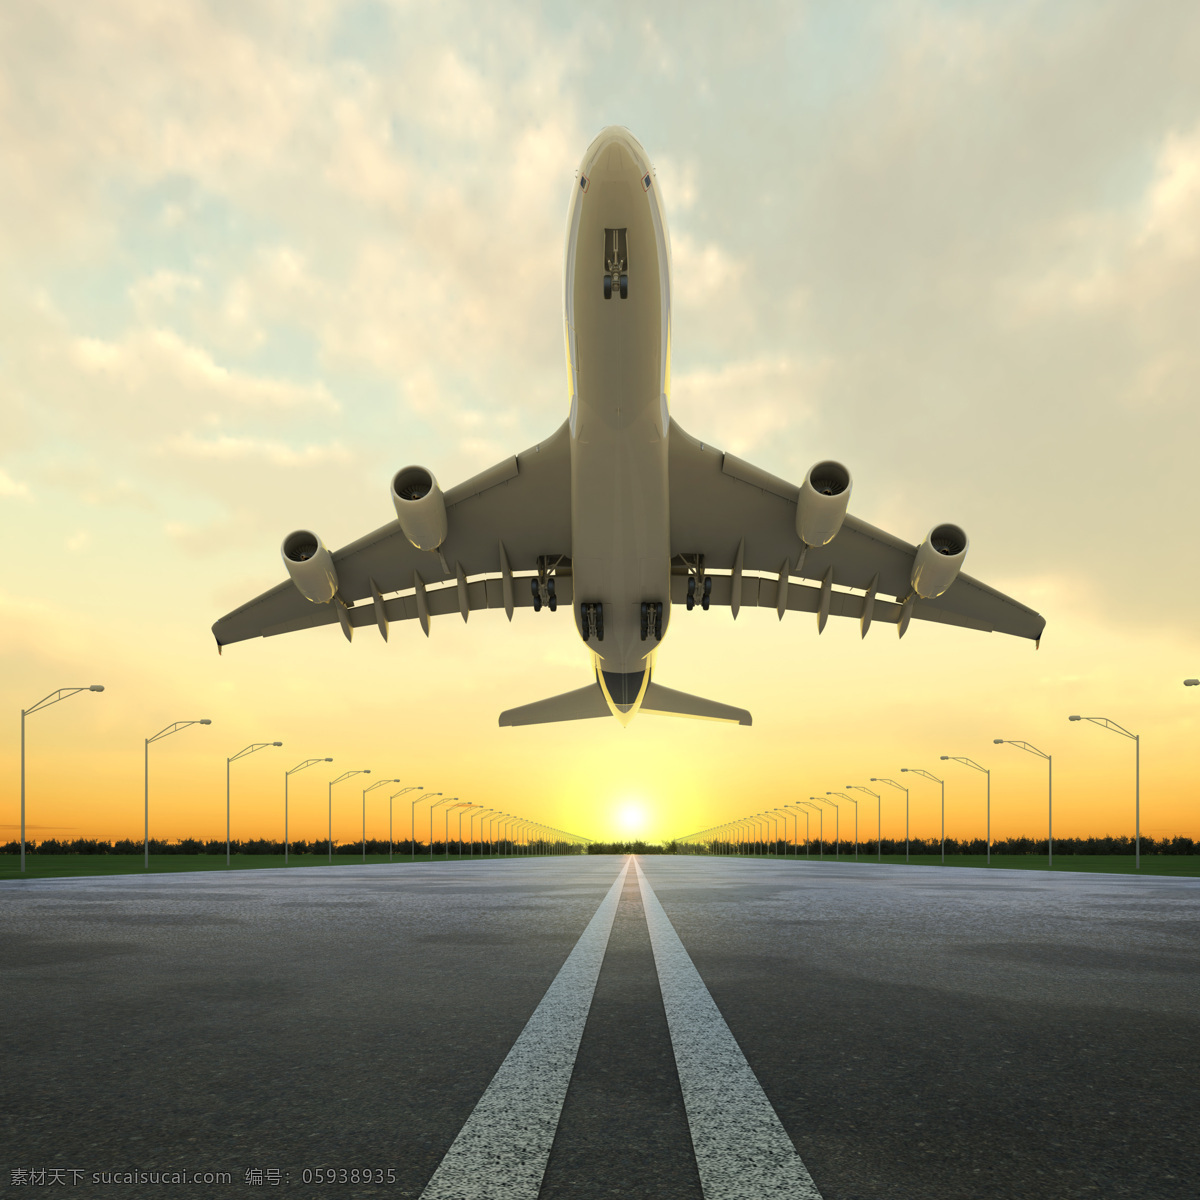 飞机起飞 飞机 客机 跑道 起航 起飞 马路 蓝天 白云 绿地 交通工具 现代科技